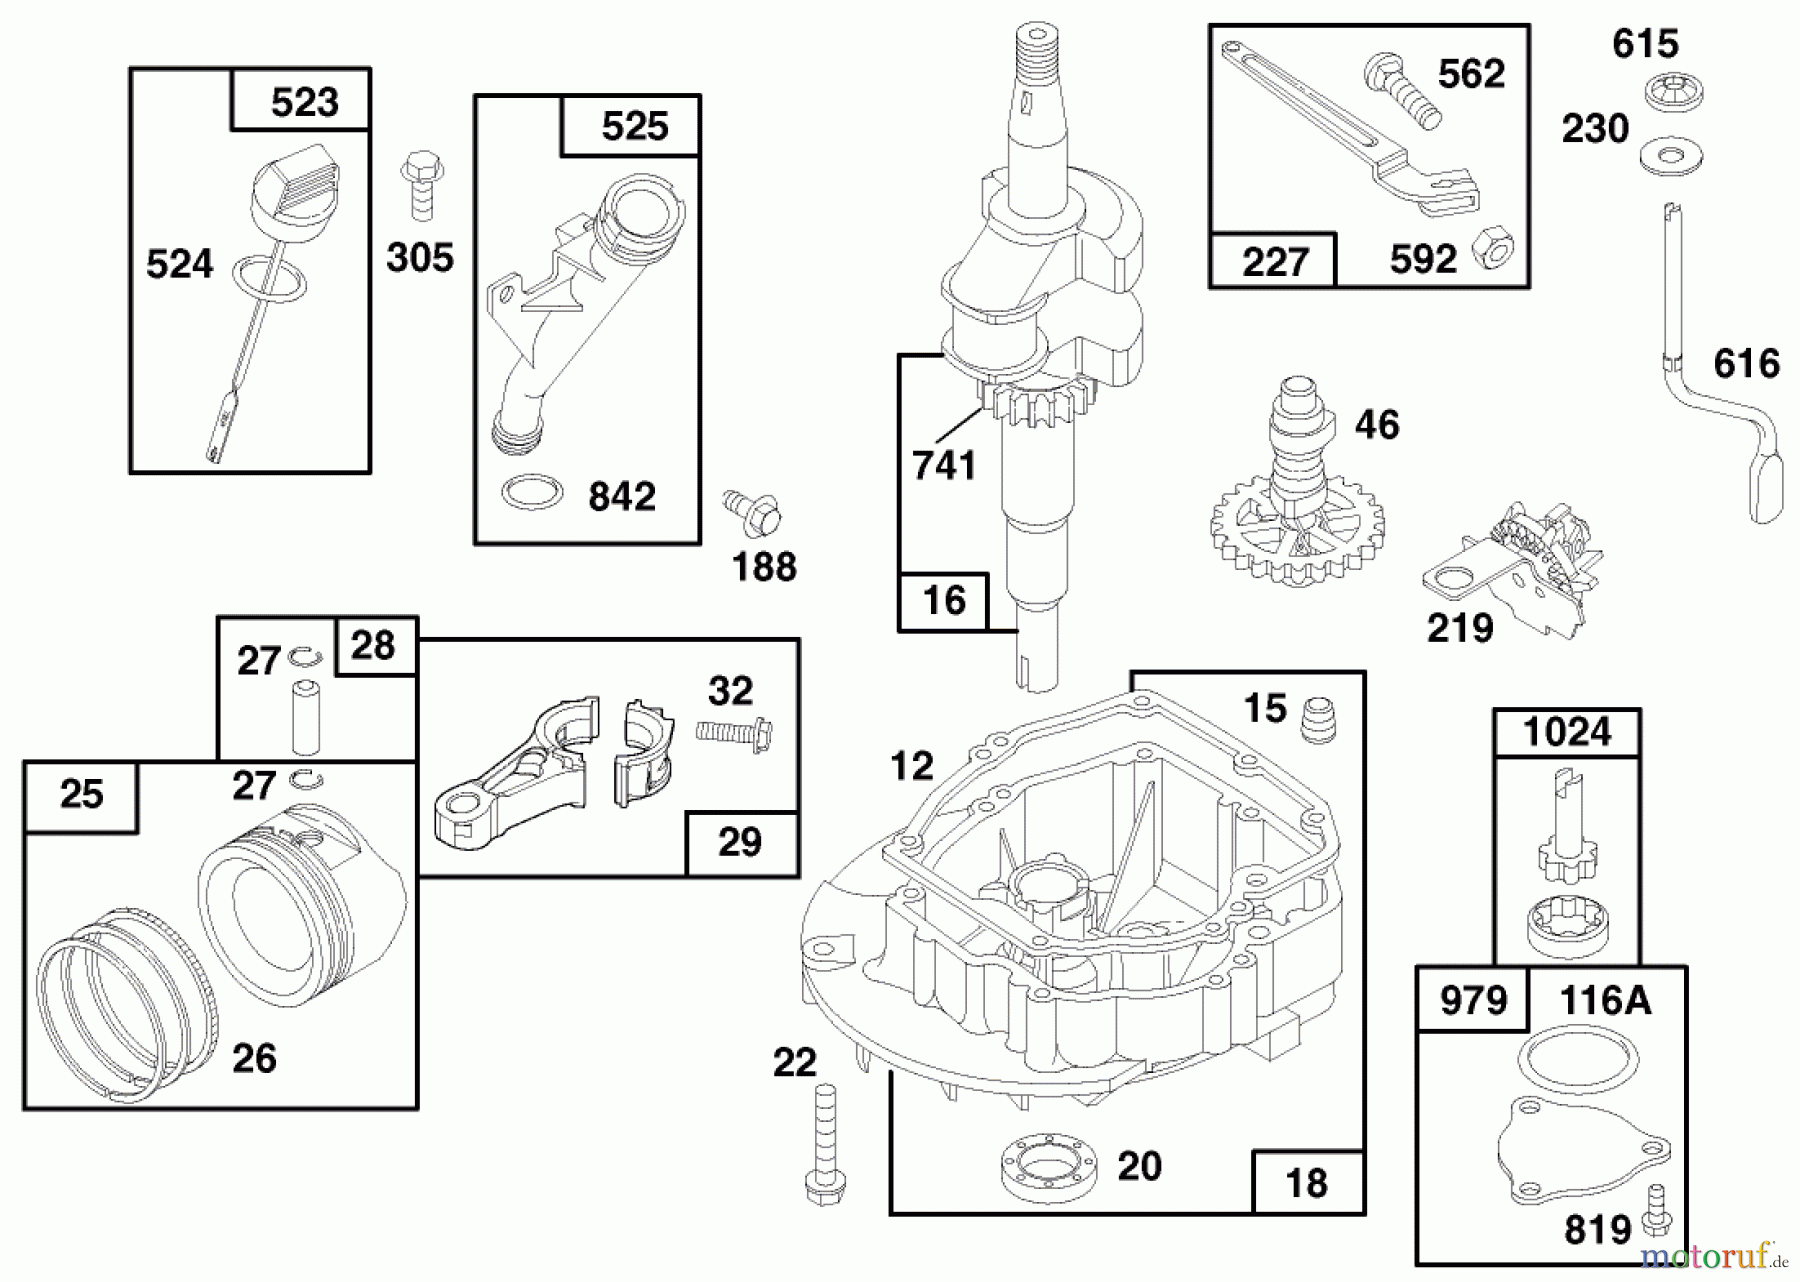  Toro Neu Mowers, Walk-Behind Seite 1 20476 - Toro Lawnmower, 1996 (6900001-6999999) ENGINE GTS 150 (MODEL NO. 20475 ONLY) #2